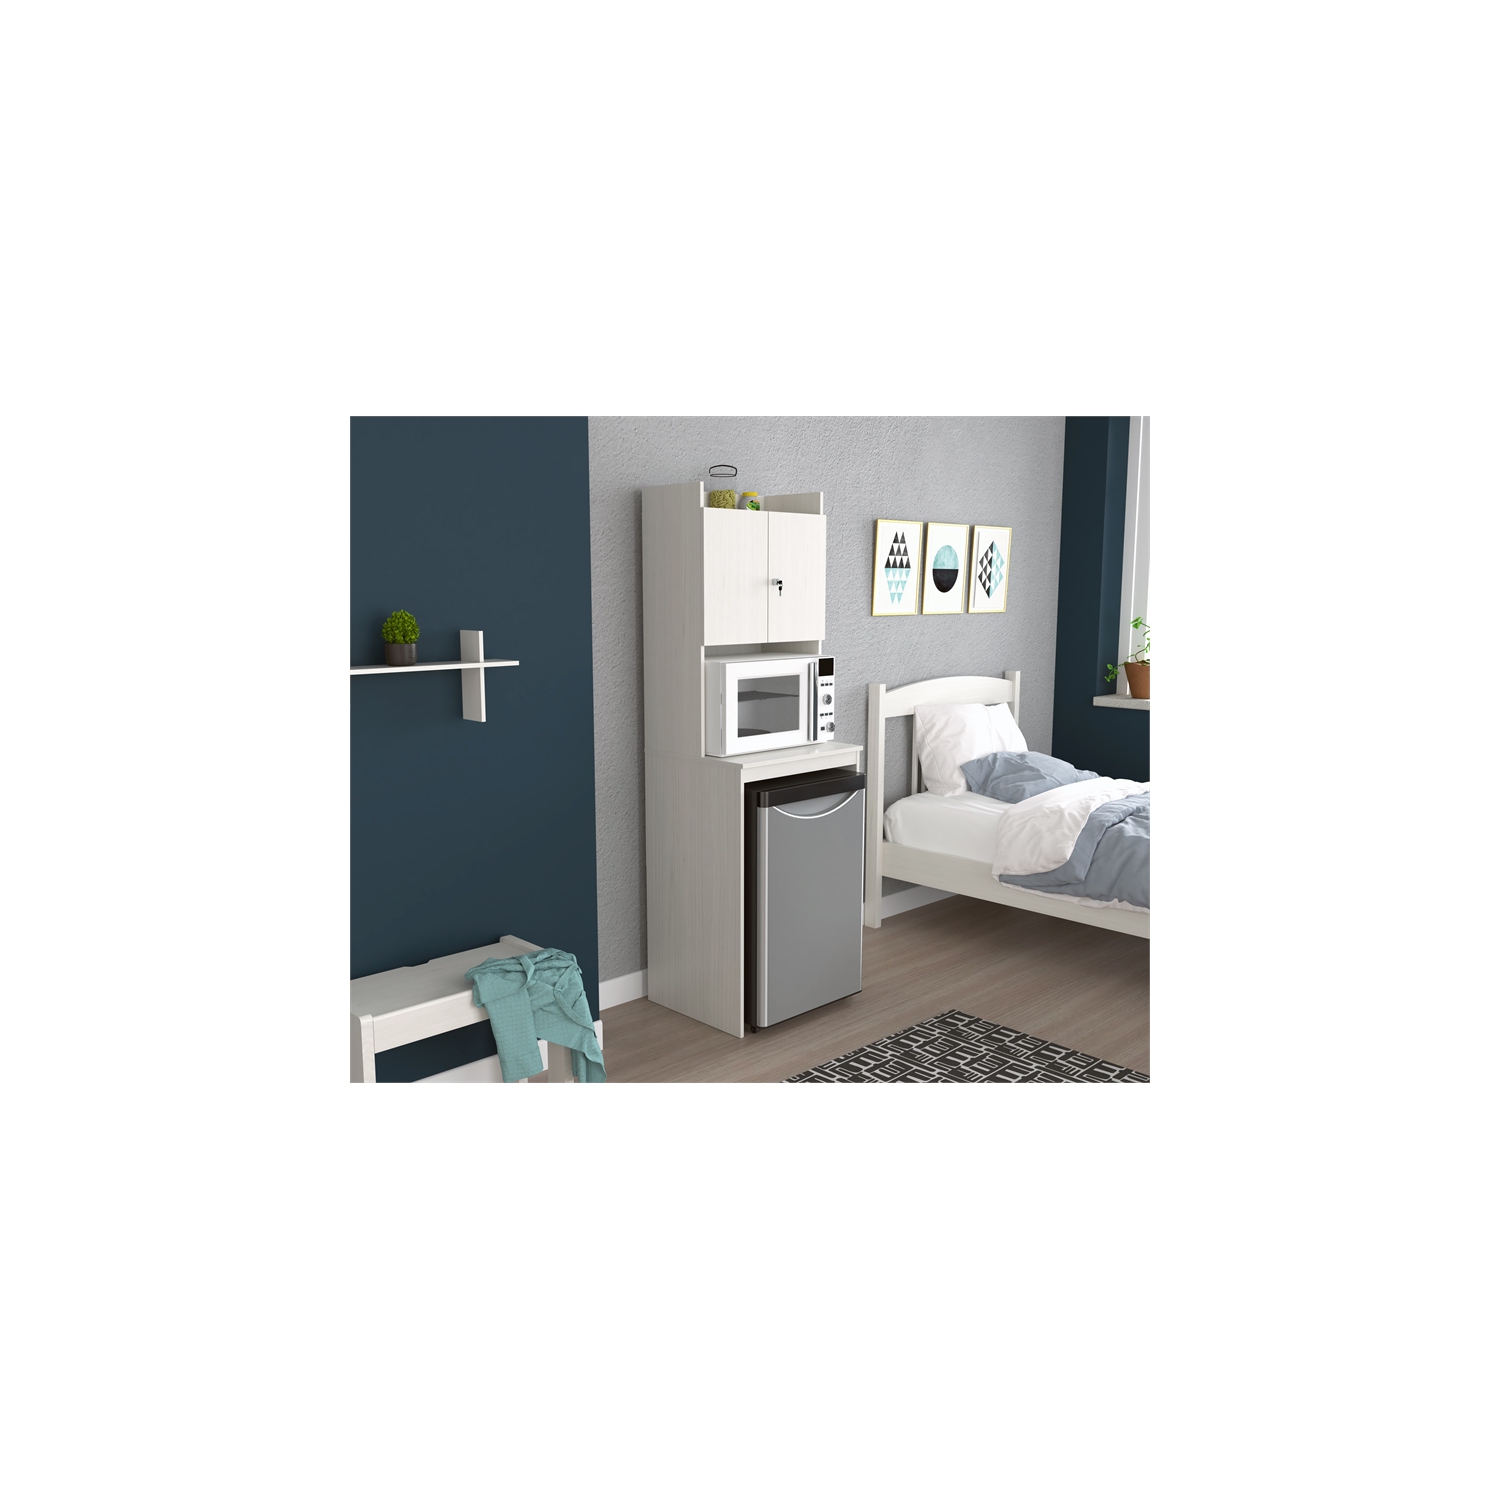 Inval Mini Refrigerator and Microwave Storage Cabinet - Amaretto